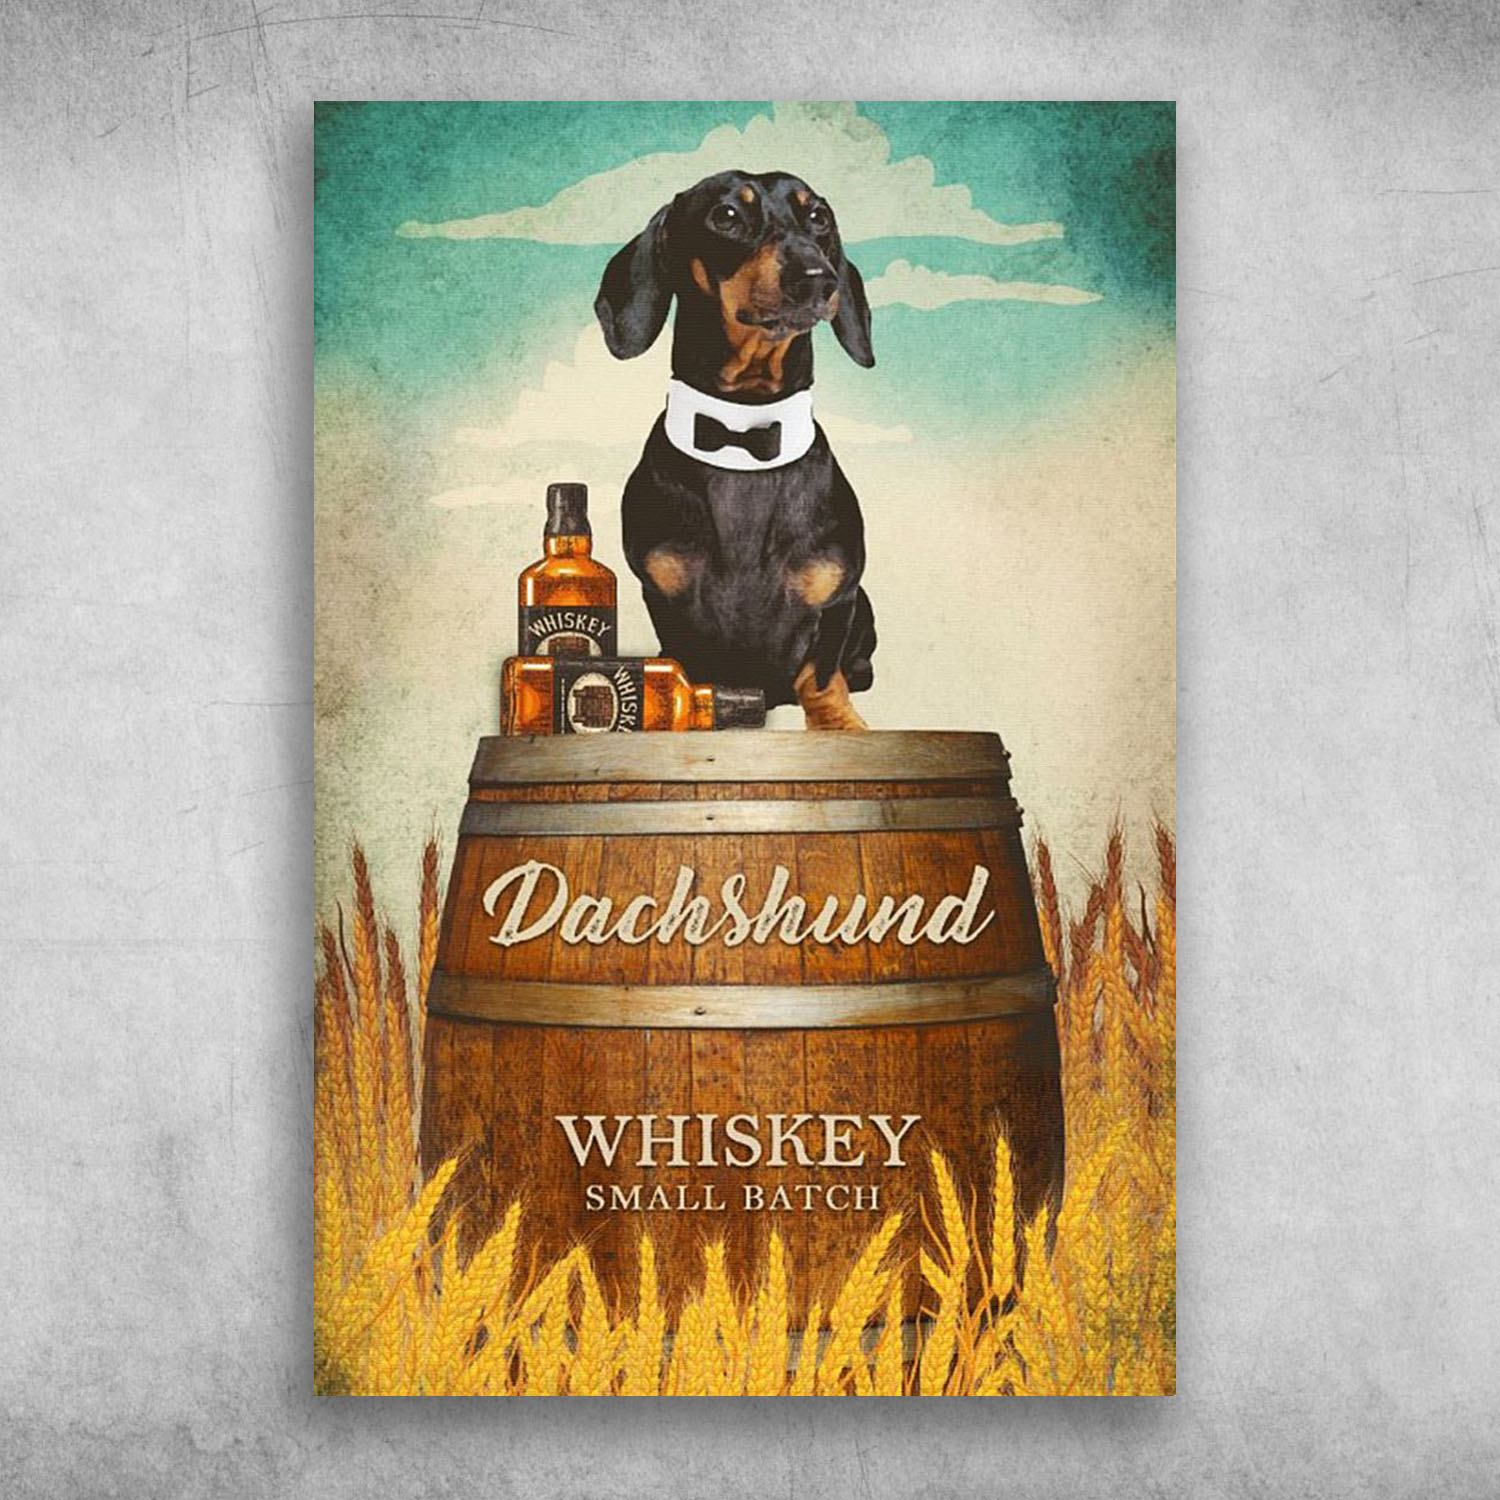 Dachshund Dog Whiskey Small Batch